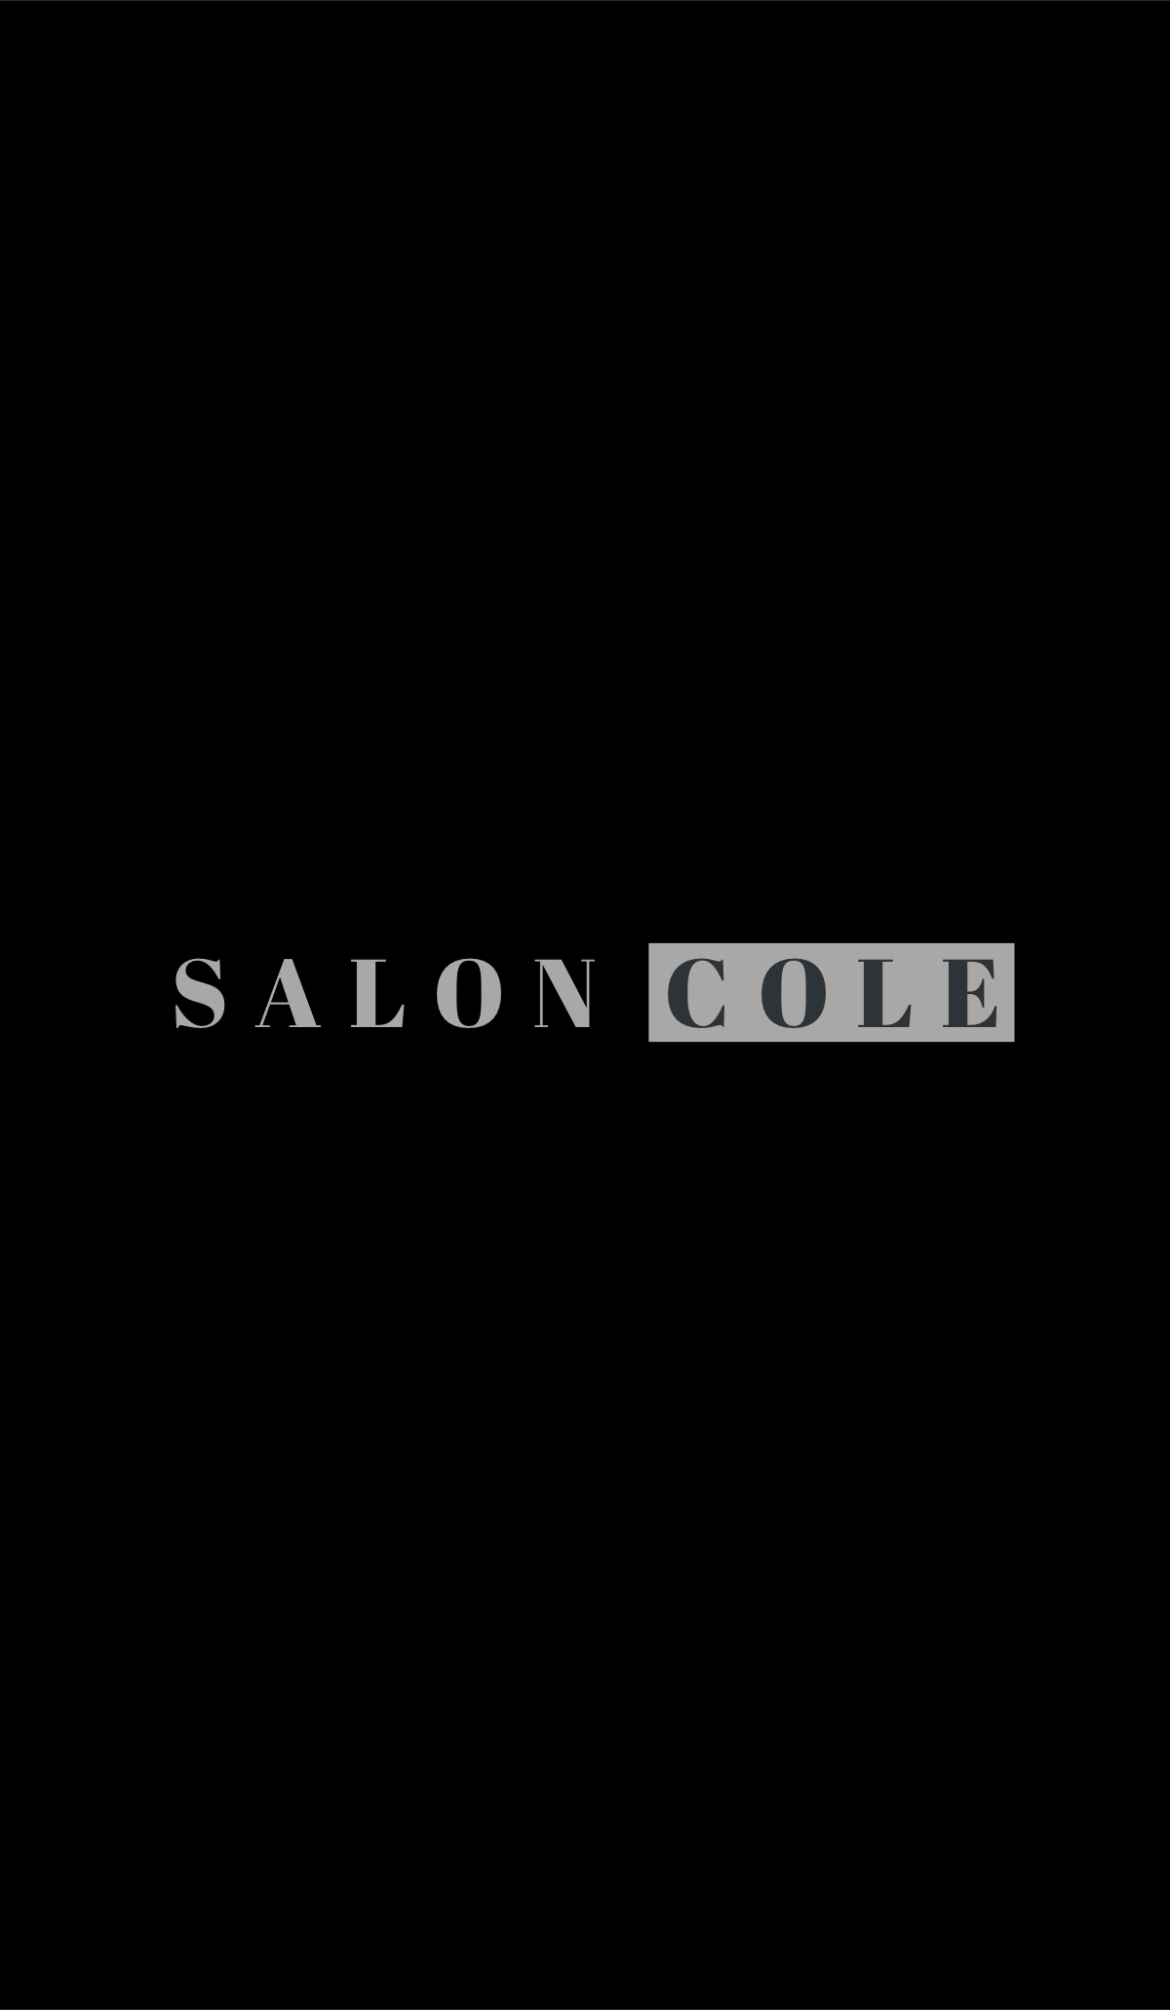 Salon Cole